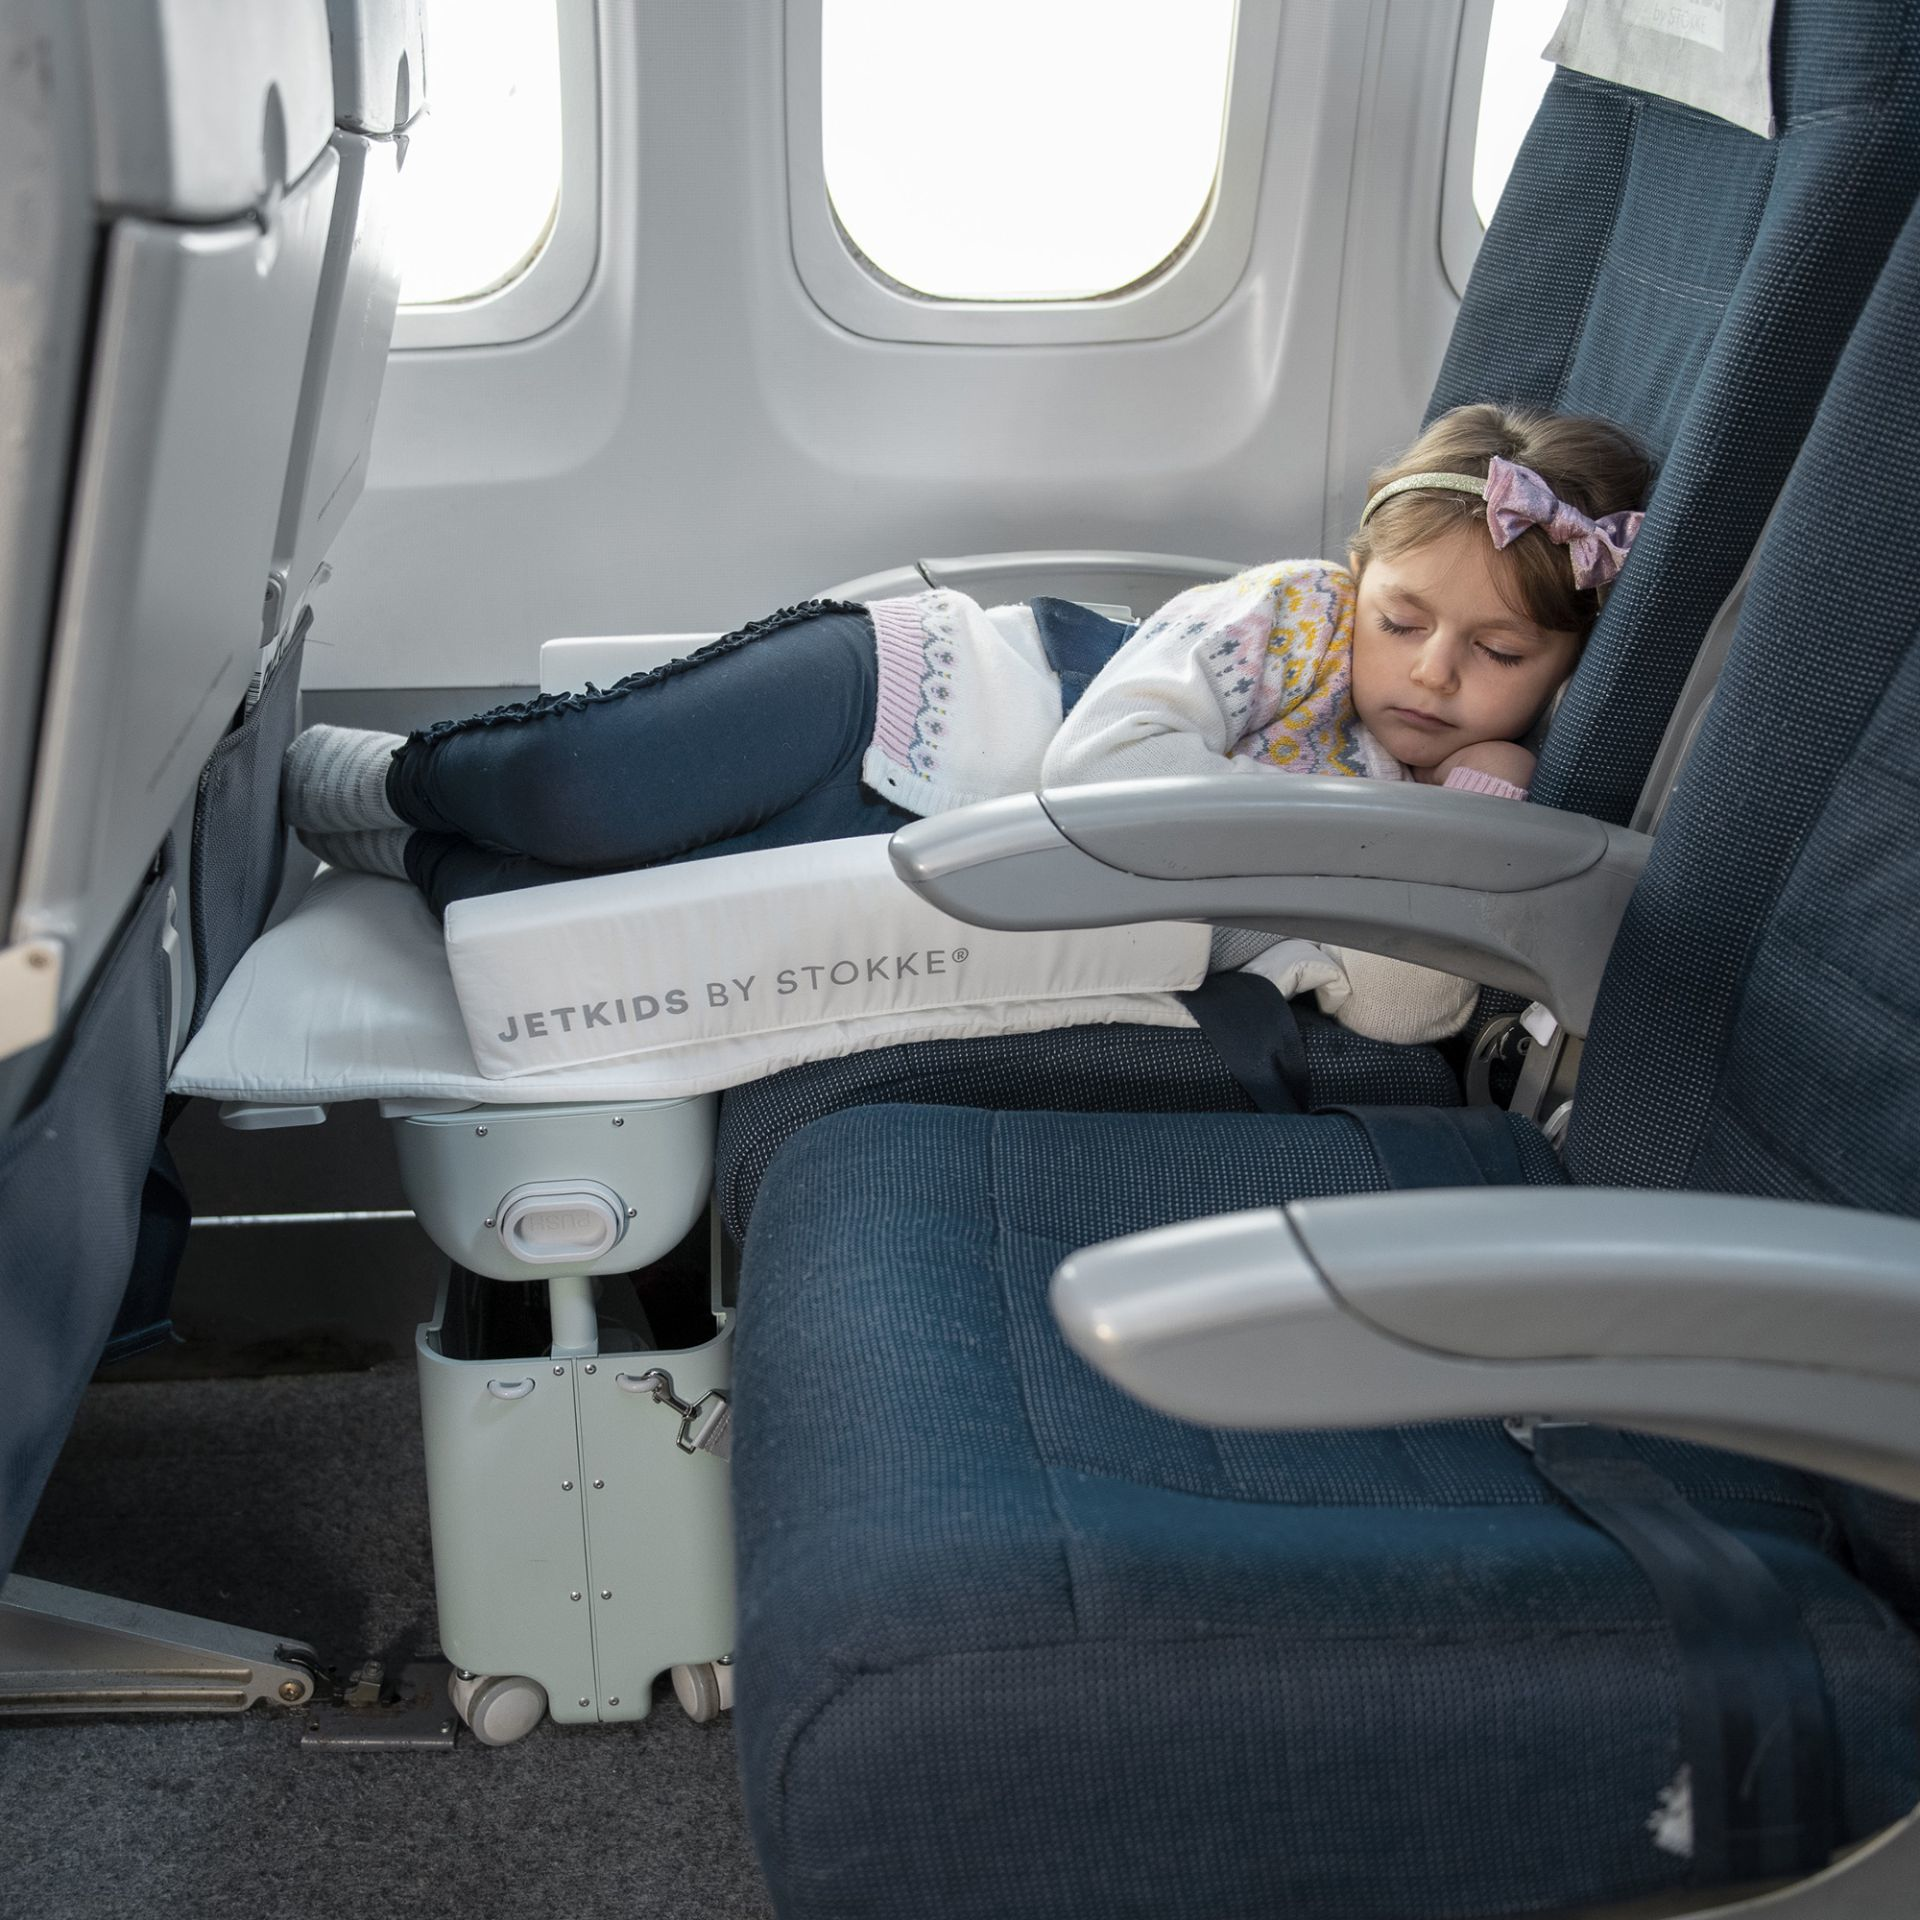 Самолет с маленьким ребенком. Stokke JETKIDS спальное место. Гамак в самолет для ребенка. Кресло для авиаперелетов детям. Приспособления для сна в самолете.